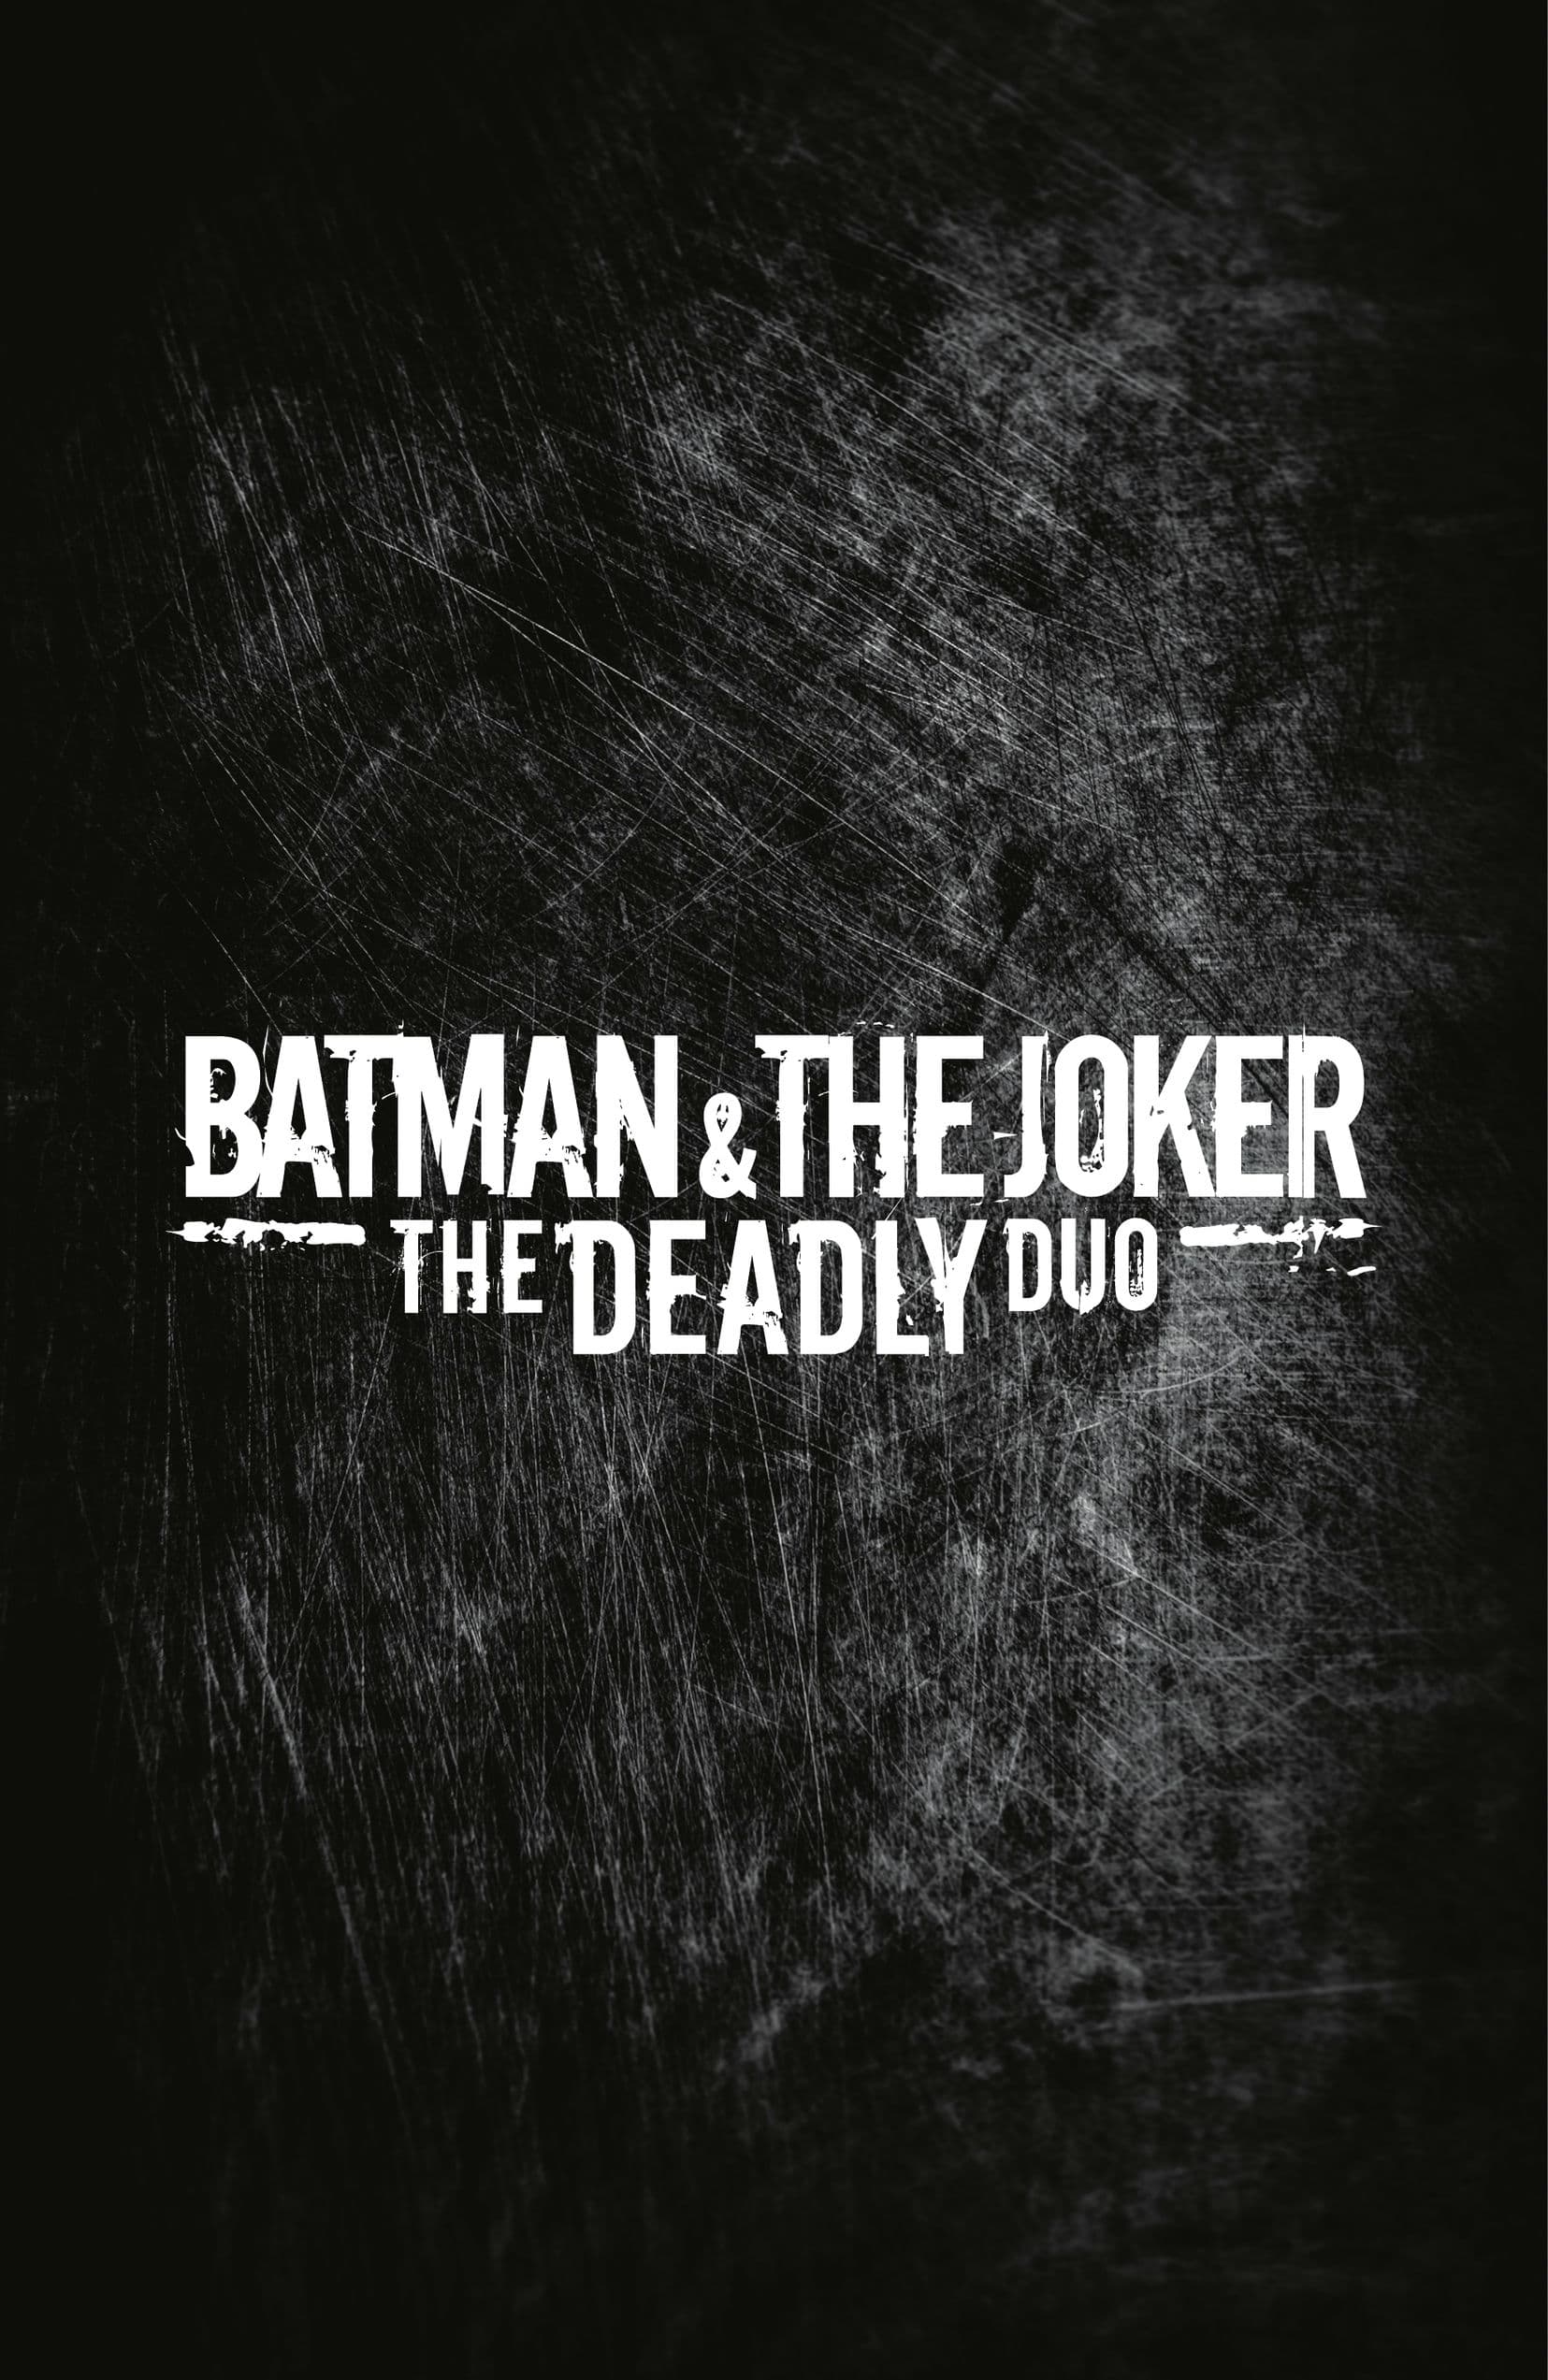 https://langgeek.net/wp-content/webpc-passthru.php?src=https://langgeek.net/wp-content/uploads/2023/04/Batman-_-The-Joker-The-Deadly-Duo-2022-005-010.jpg&nocache=1